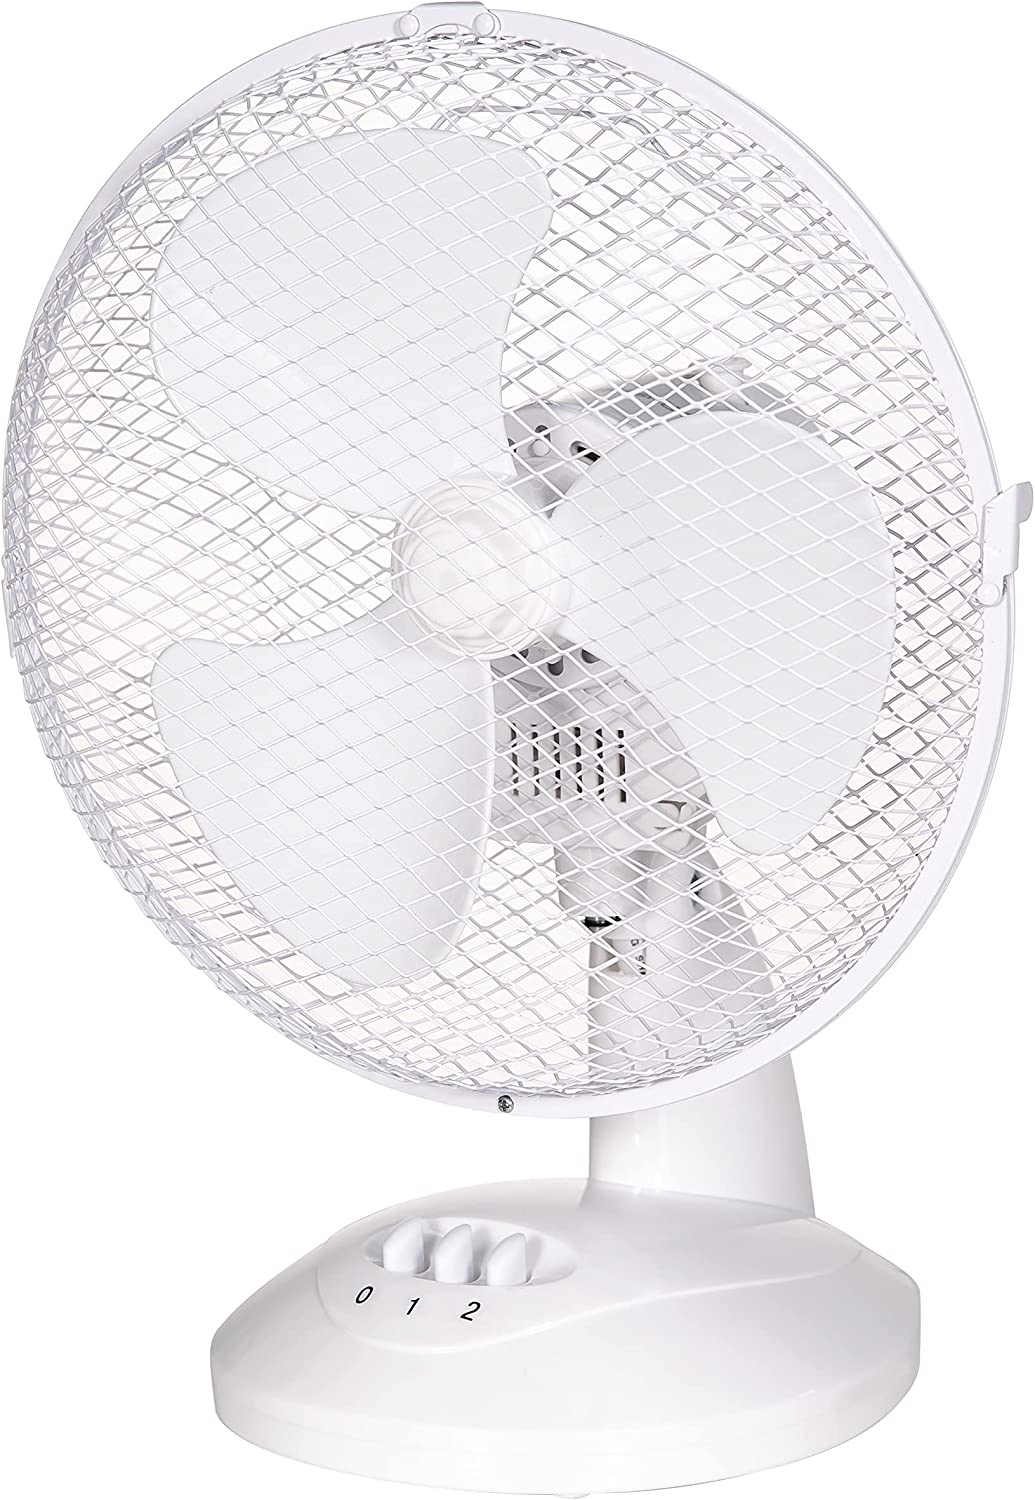 Dieser Ventilator ist ideal für die Sommermonate und kostet 12,99 £